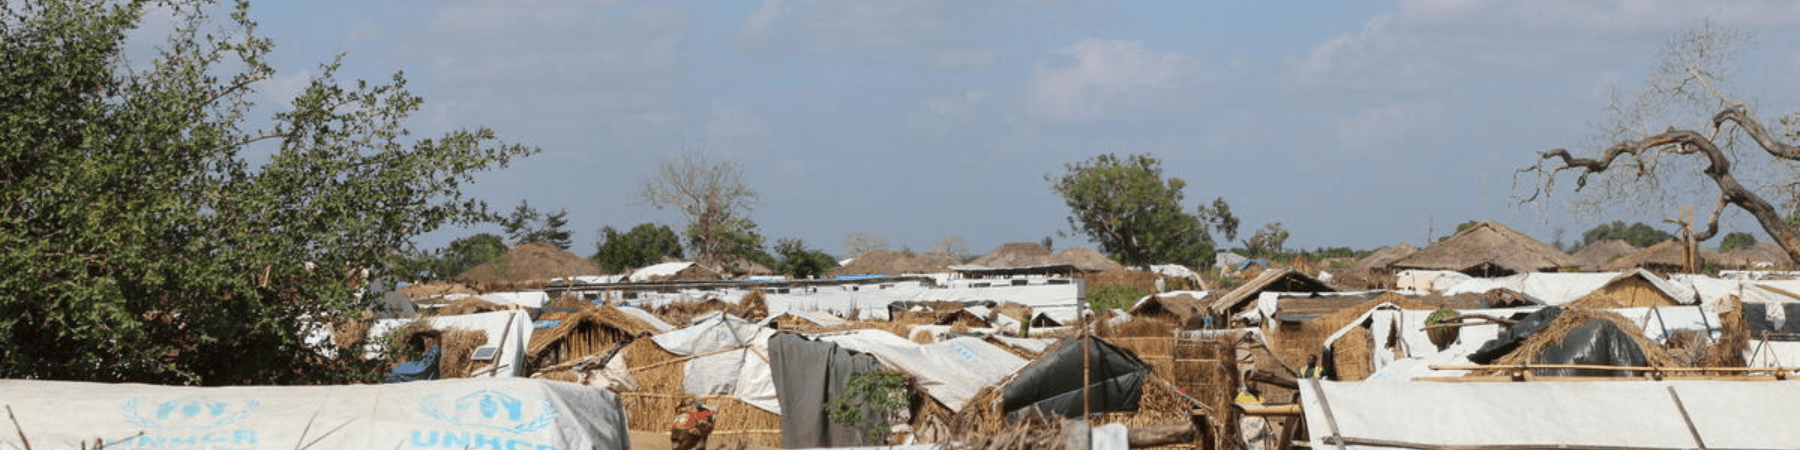 campo con tende per sfollati interni in mozambico 